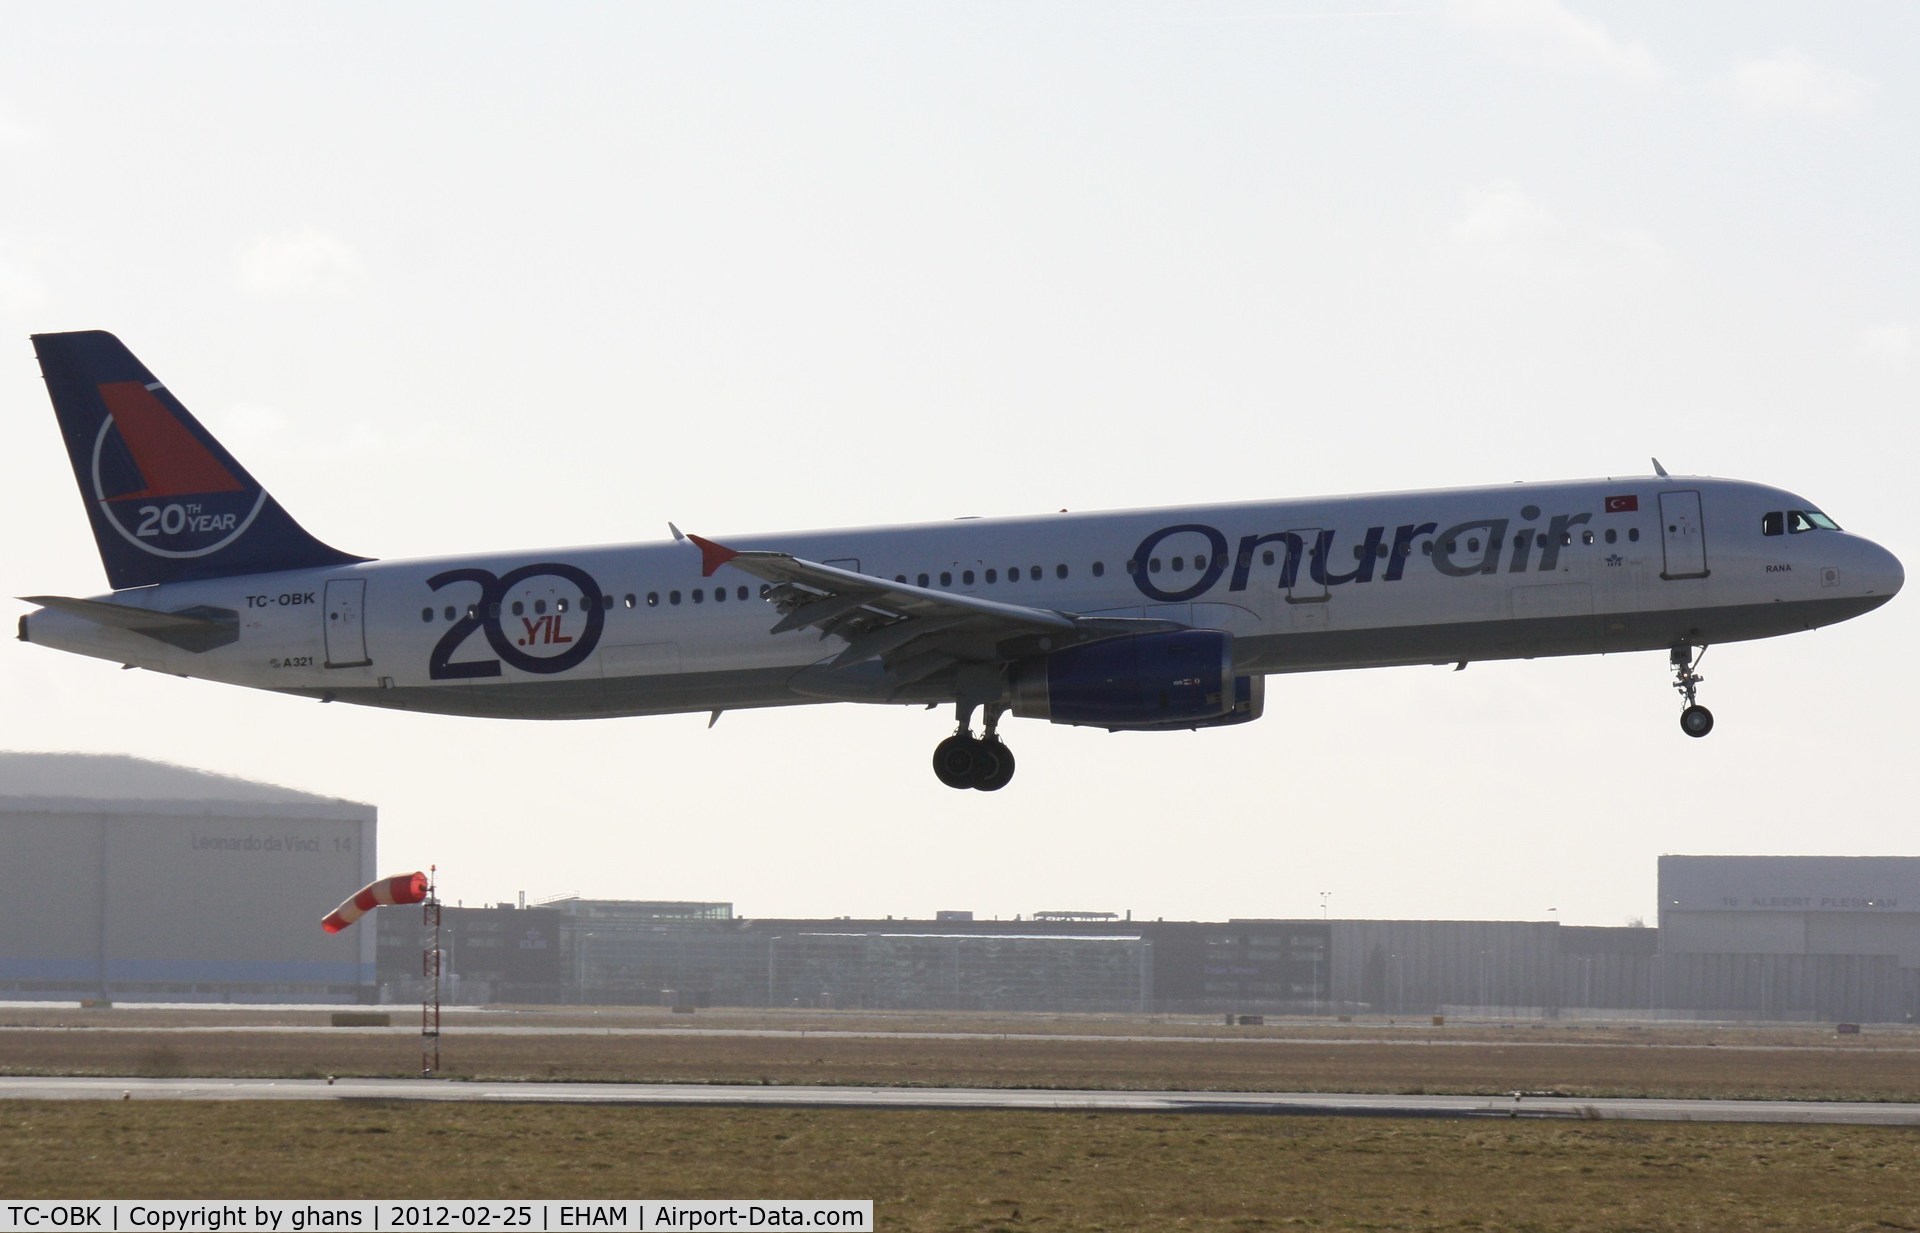 TC-OBK, 1998 Airbus A321-231 C/N 792, 20 years OnurAir